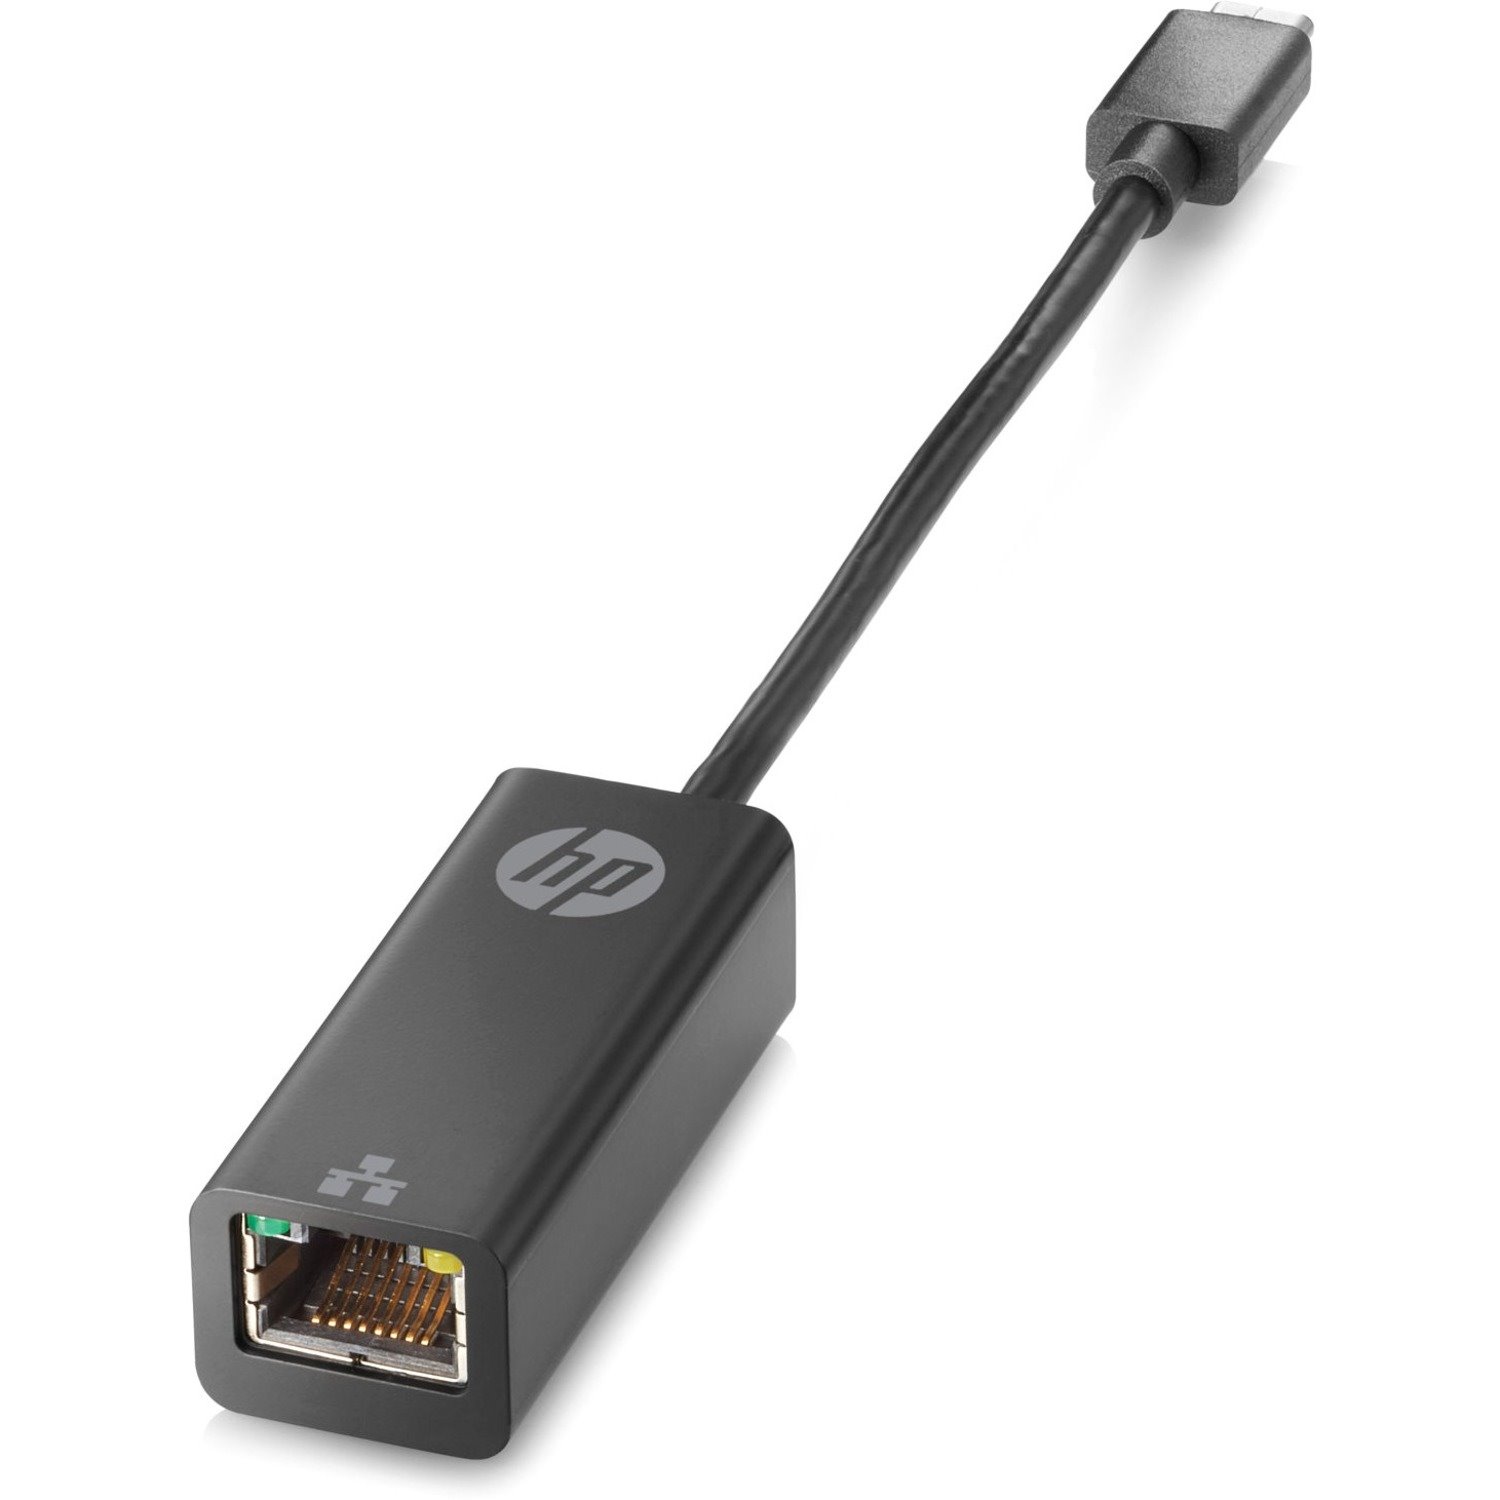 HP Gigabit Ethernet Card for Tablet/Notebook - 10/100/1000Base-T - Desktop